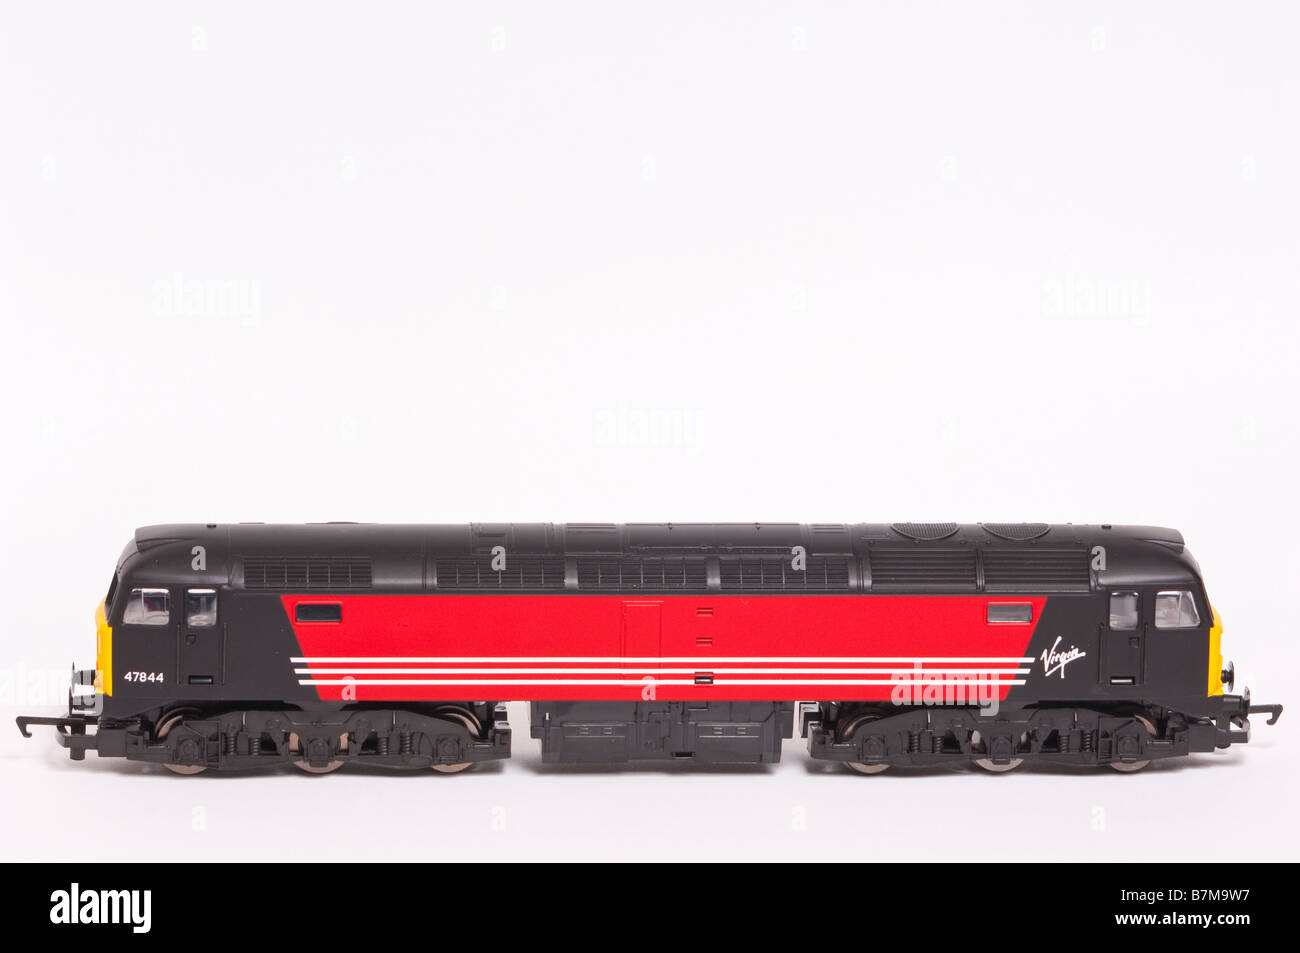 Una chiusura di un giocattolo Hornby modello diesel elettrico treno in livrea vergine su sfondo bianco Foto Stock